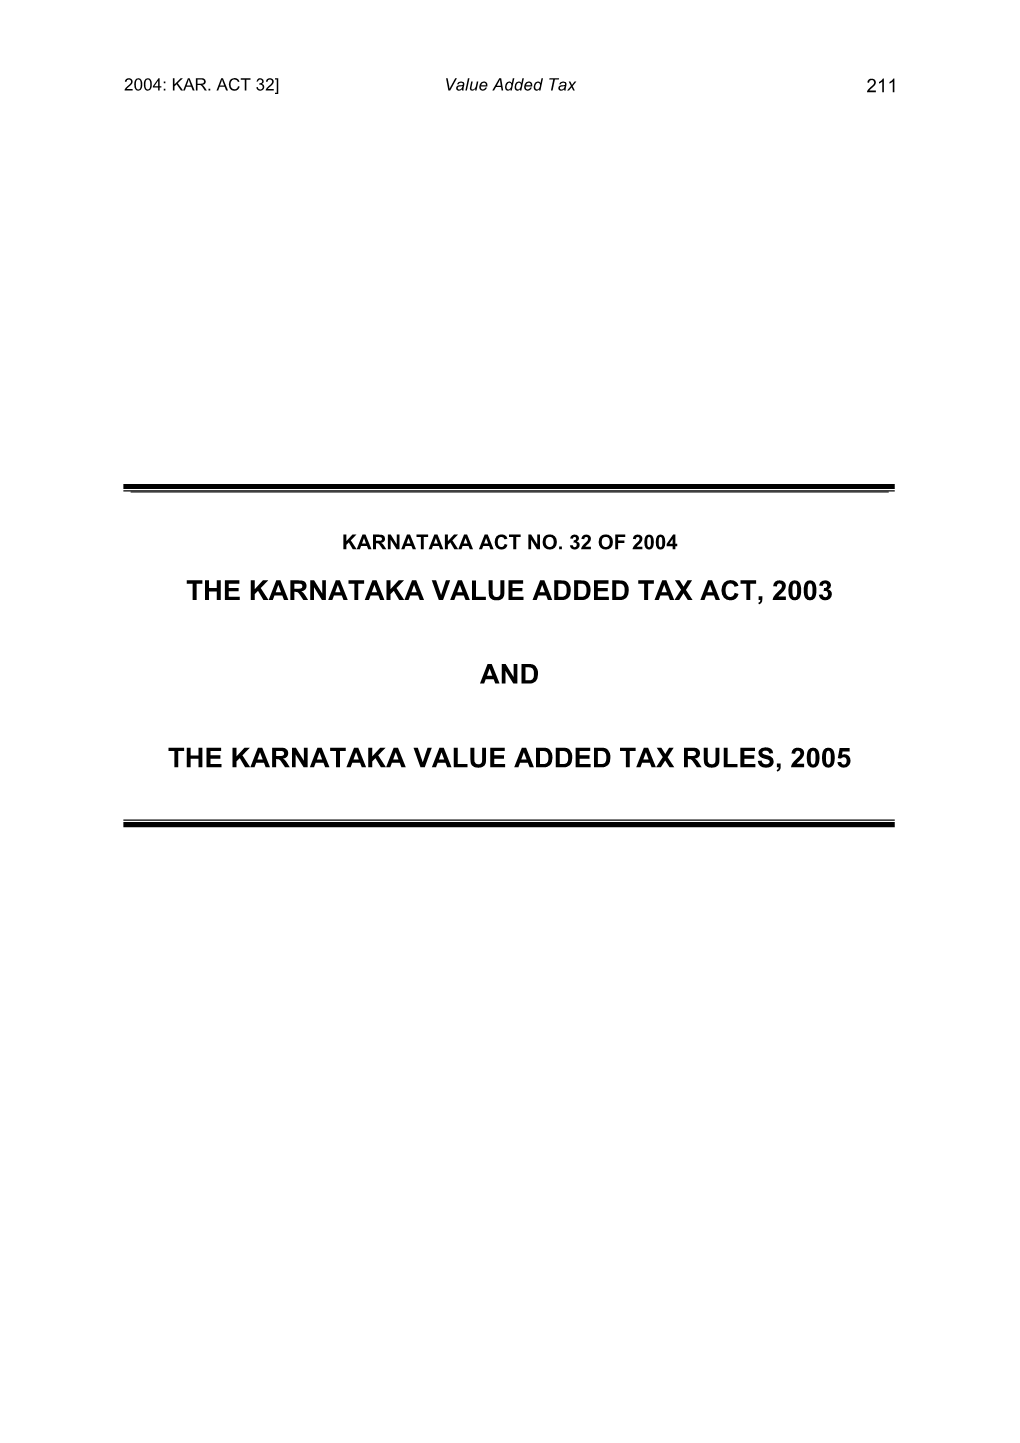 Karnataka Value Added Tax Act, 2003